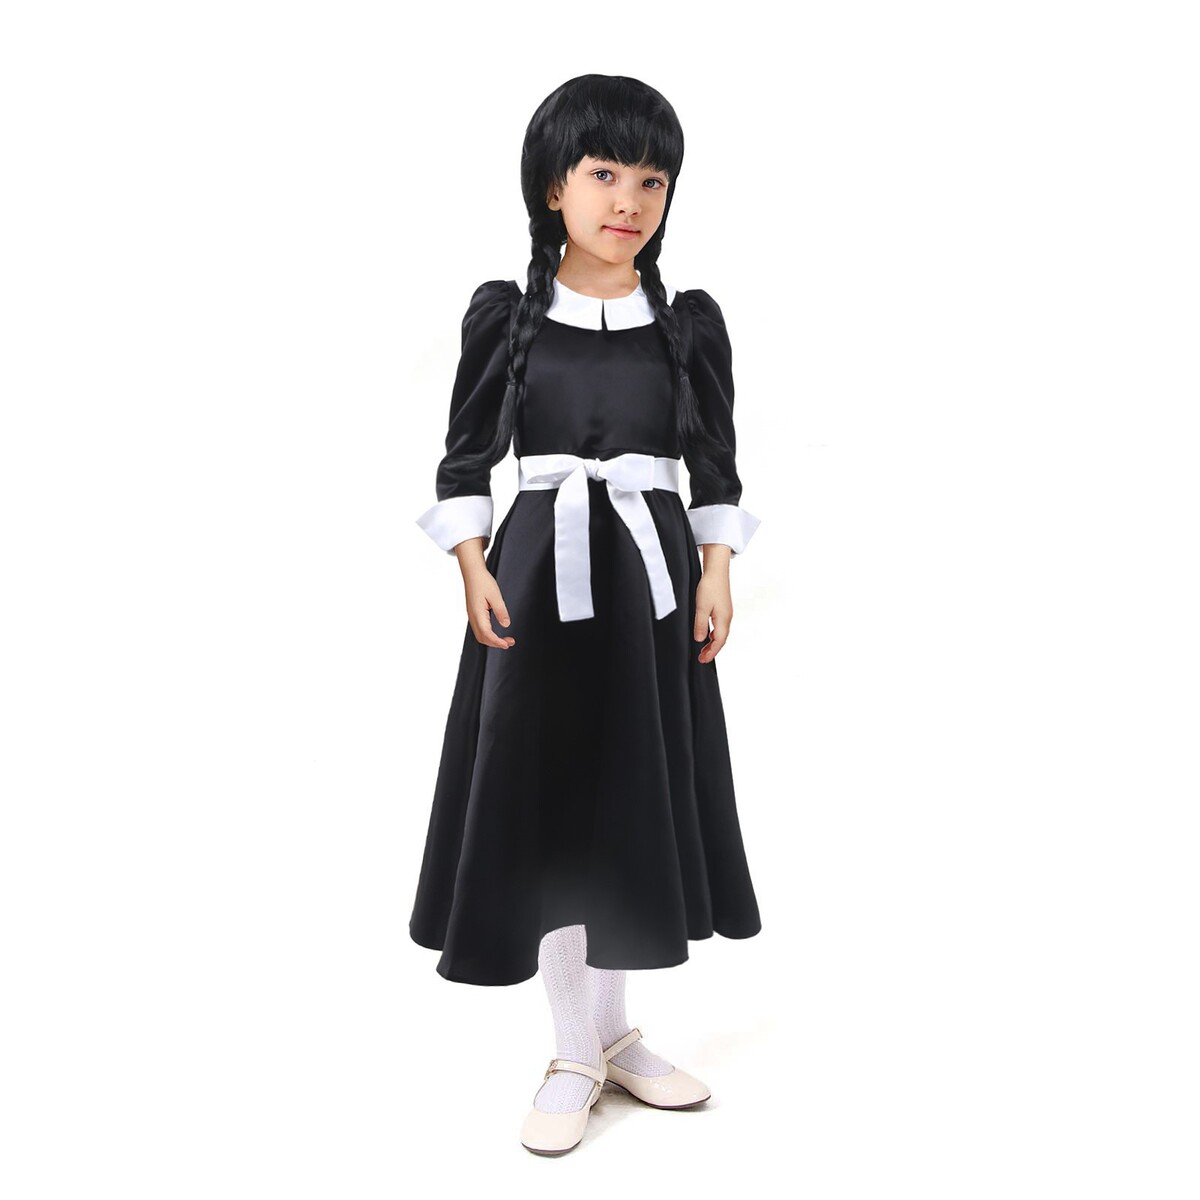 Карнавальное черное платье с белым воротником,атлас,п/э,р-р44,р164 платье с воротником holivin карусель бежевое